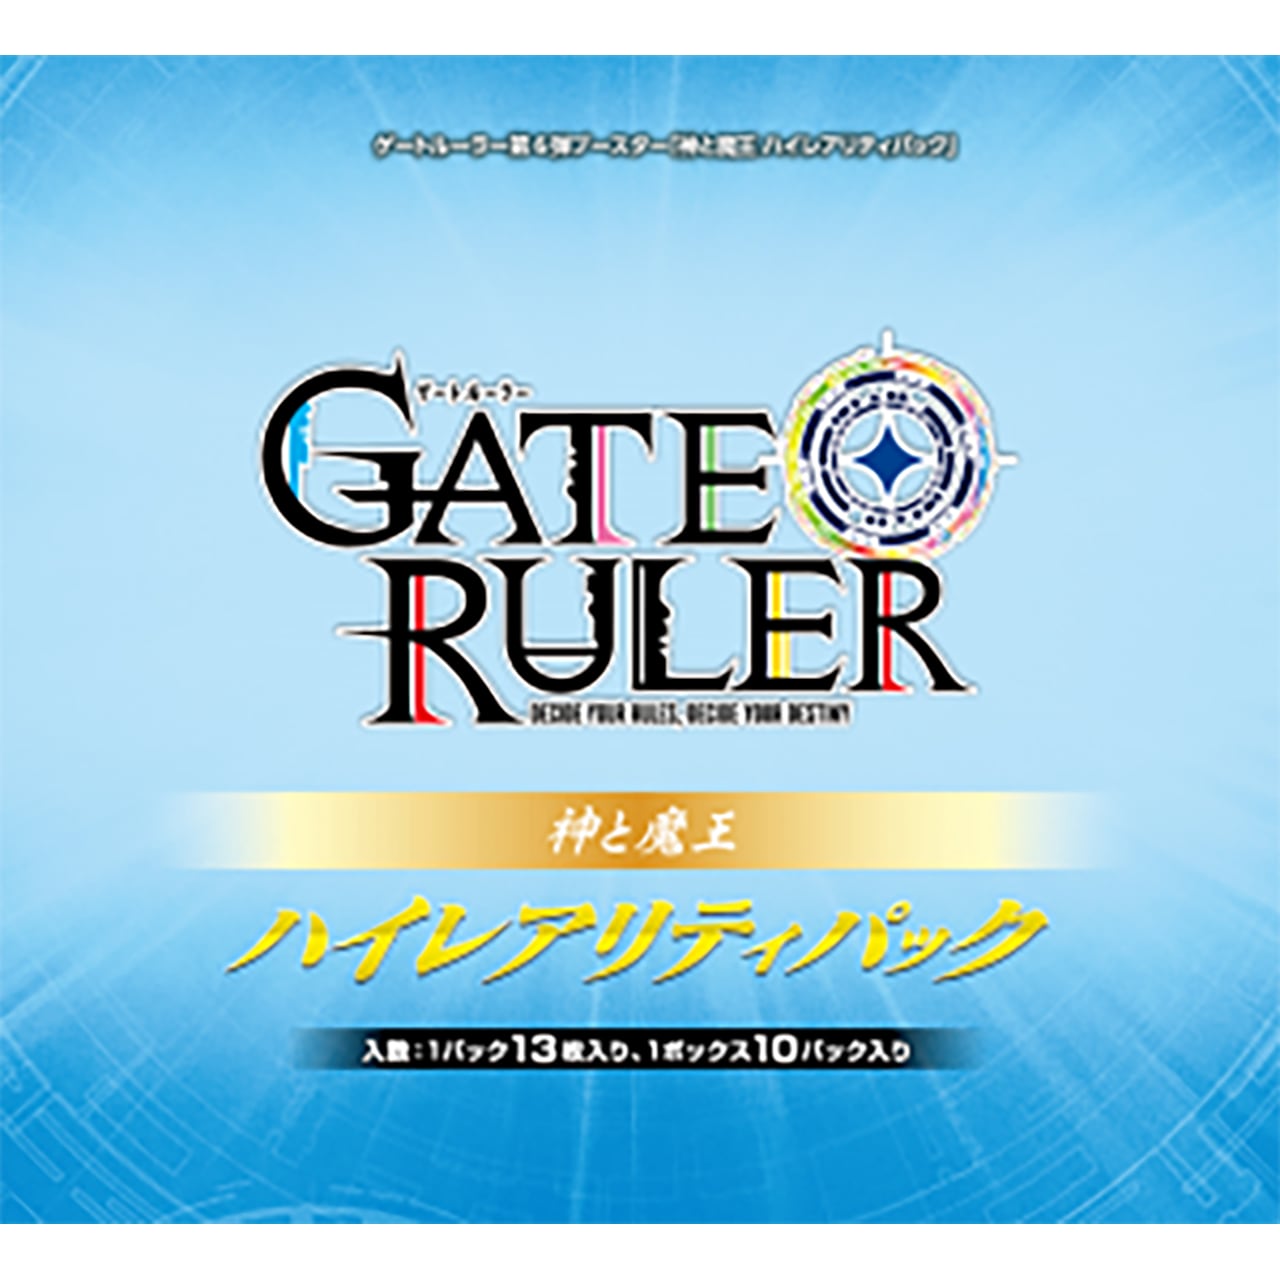 【BOX】ゲートルーラー Gateo Ruler ハイレアリティパック 「神と魔王」